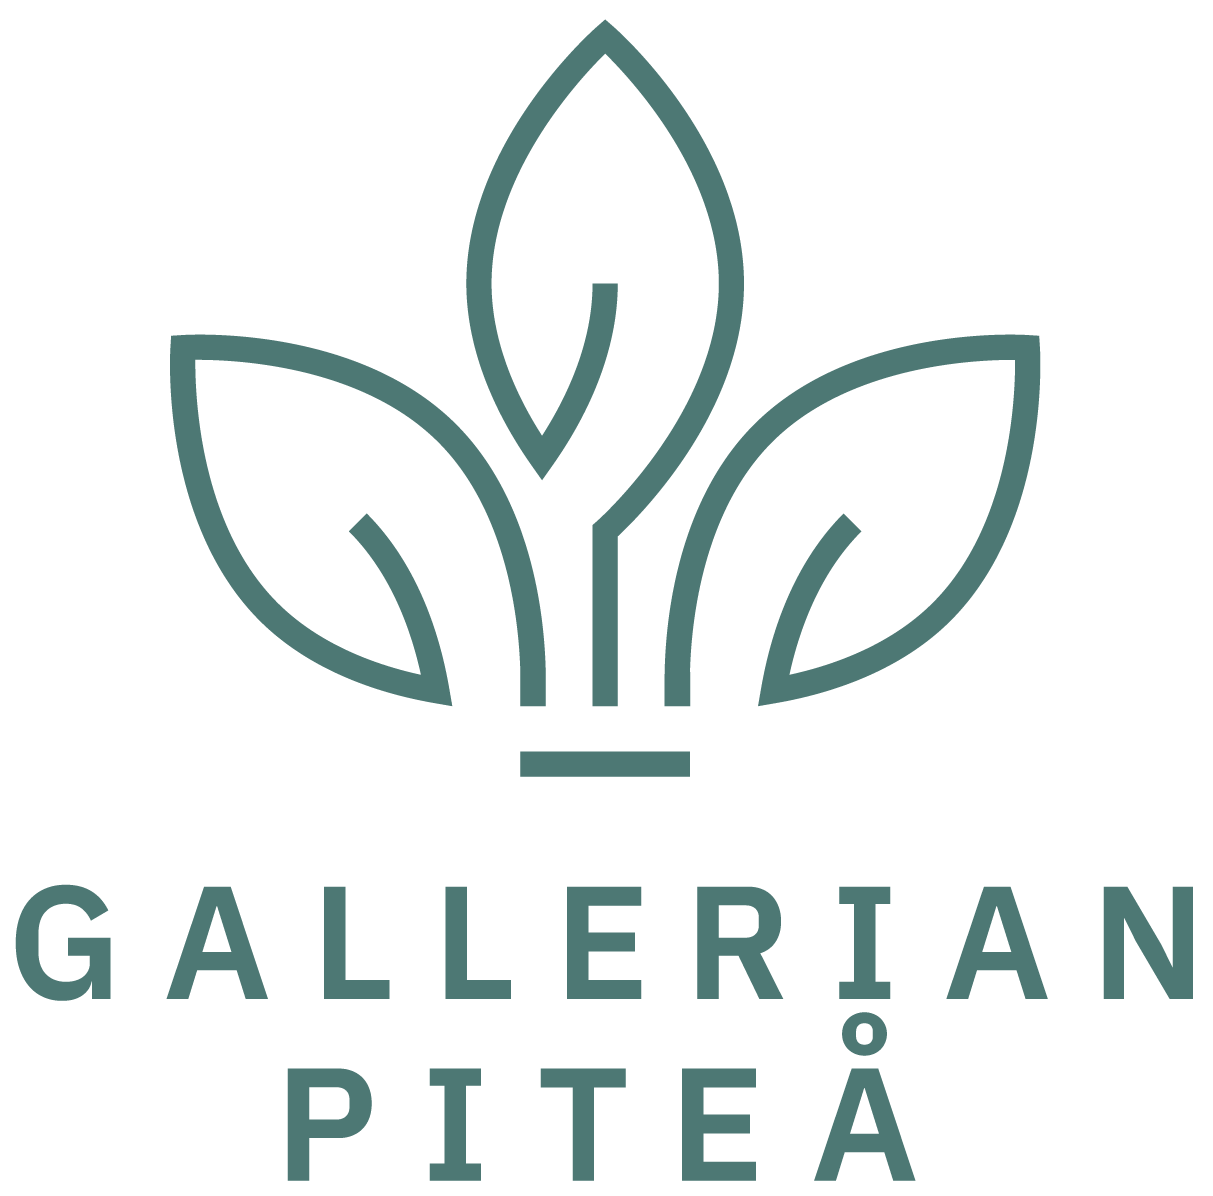 Gallerian Piteå